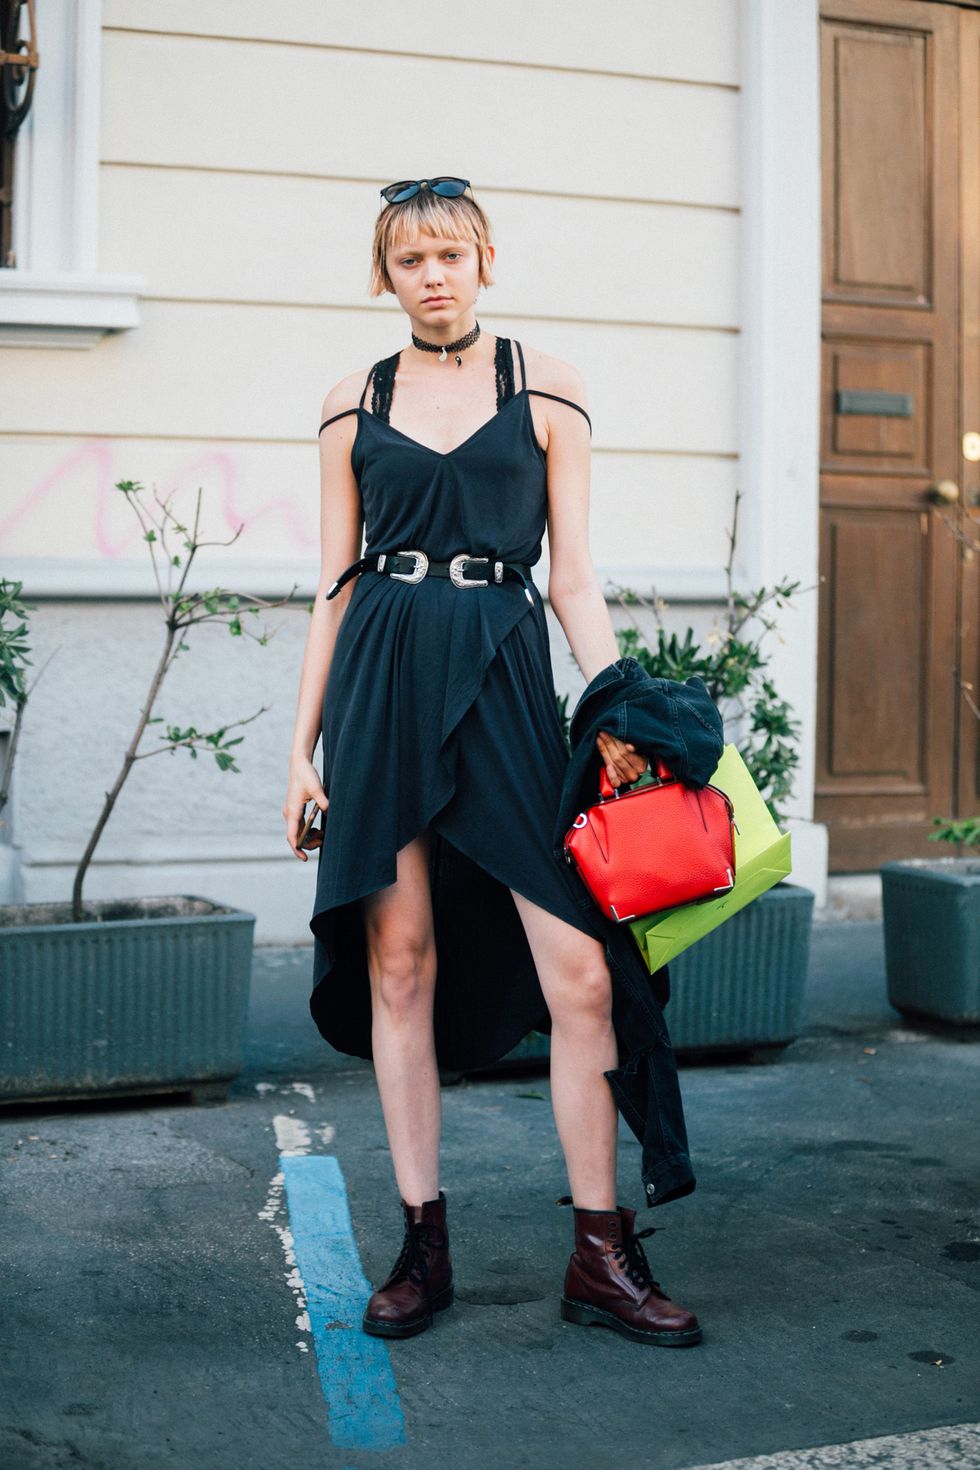 Guarda i vestitini estivi da abbinare agli stivali e ispirati agli outfit dello street style indossati dalle fashion blogger più glam.